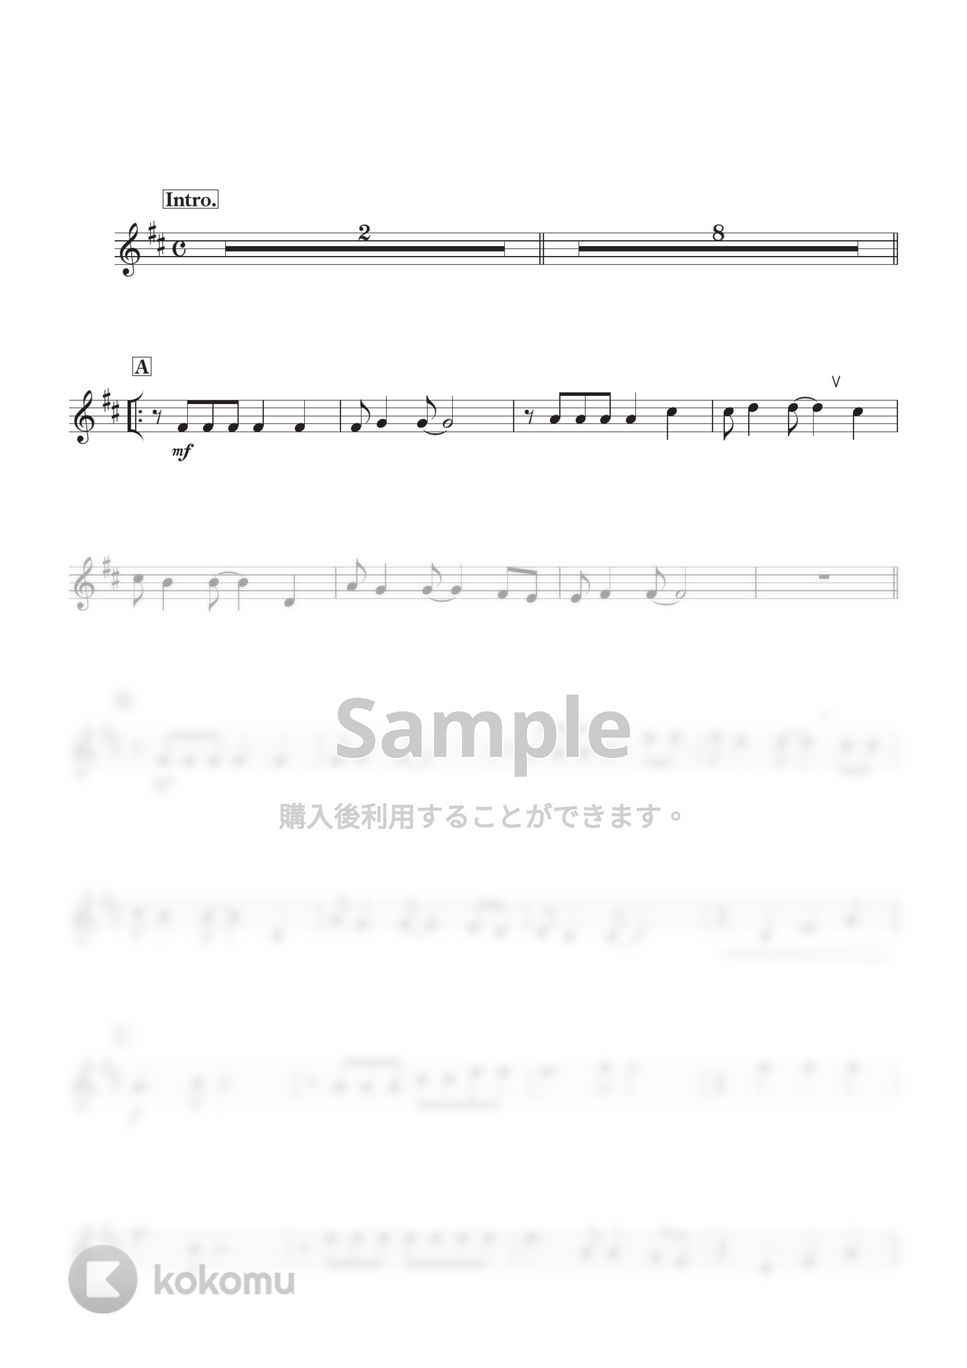 スピッツ - 魔法のコトバ  (E♭) by kanamusic